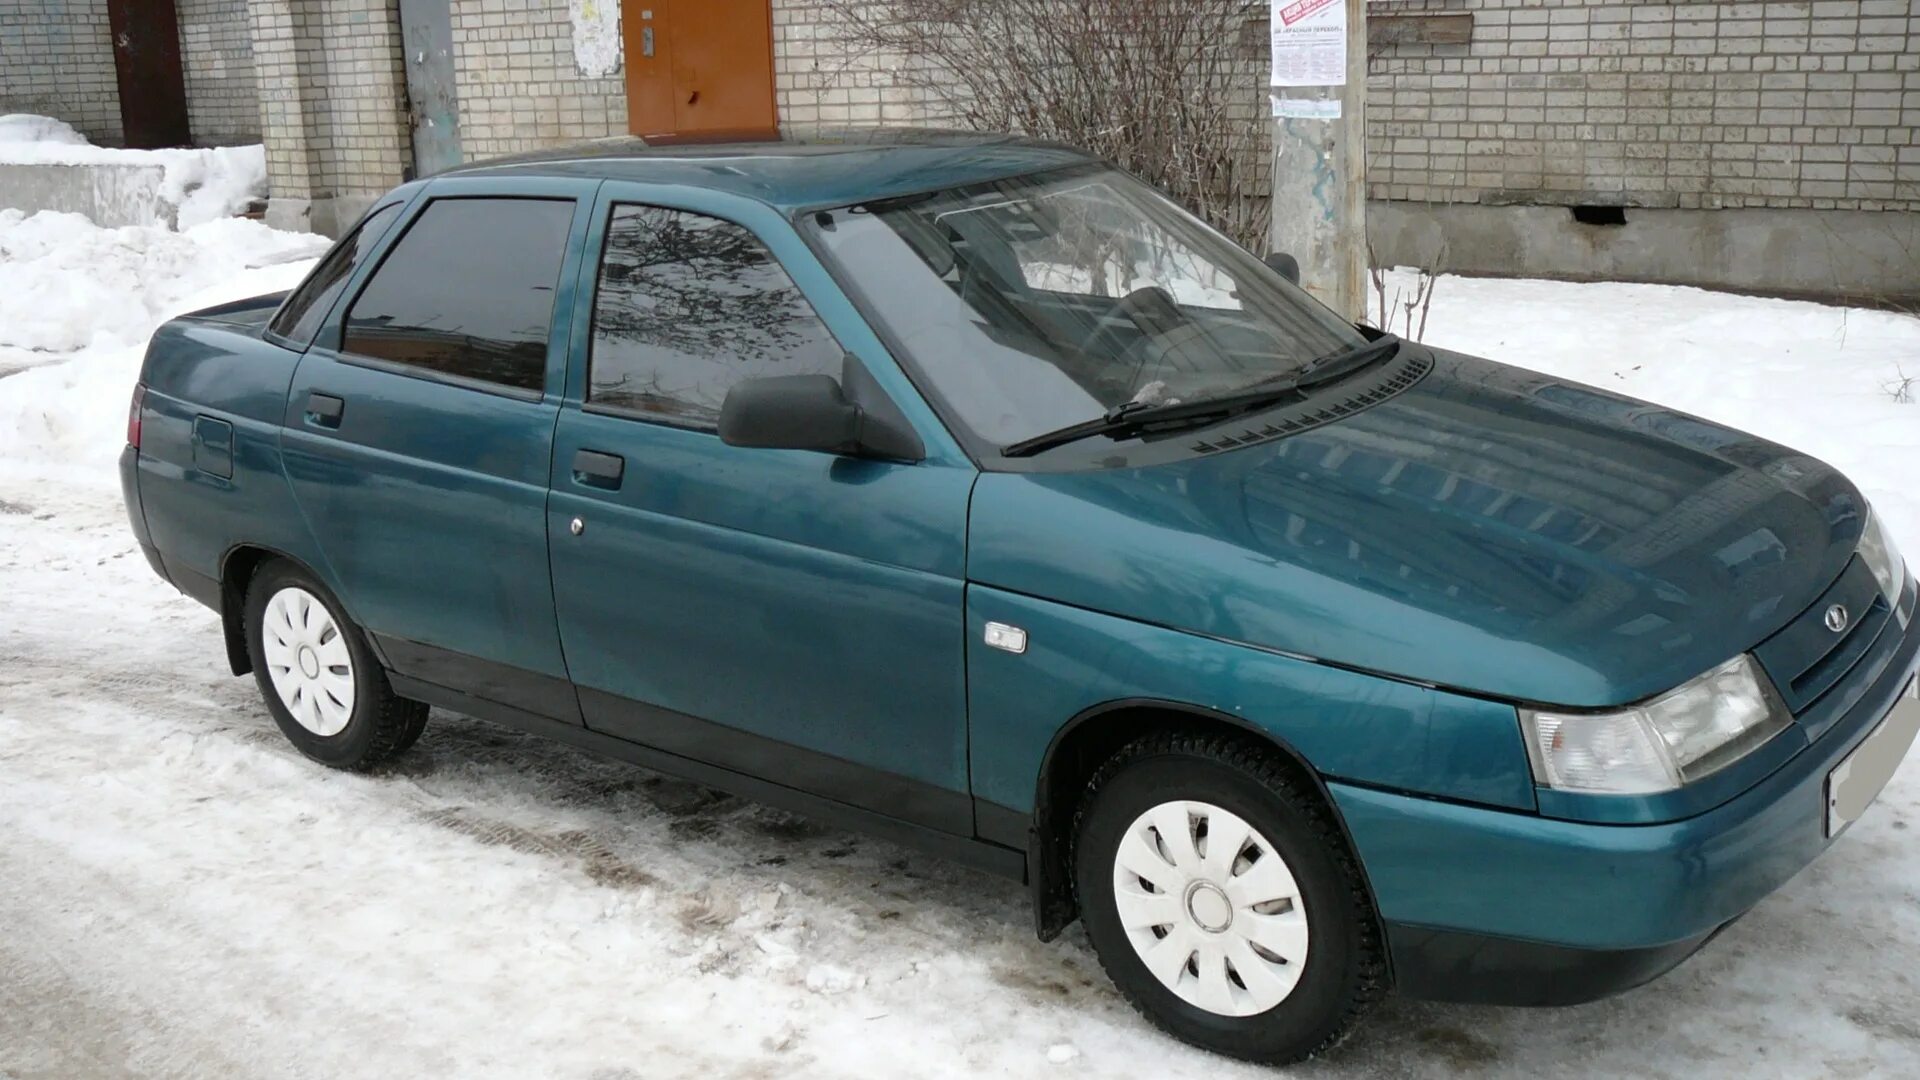 Купить машину в ленинградской области с пробегом. ВАЗ 2110 1999 зеленый металлик. ВАЗ 2110 мурена. ВАЗ 2110 цвет мурена. ВАЗ 2110 мурена металлик.